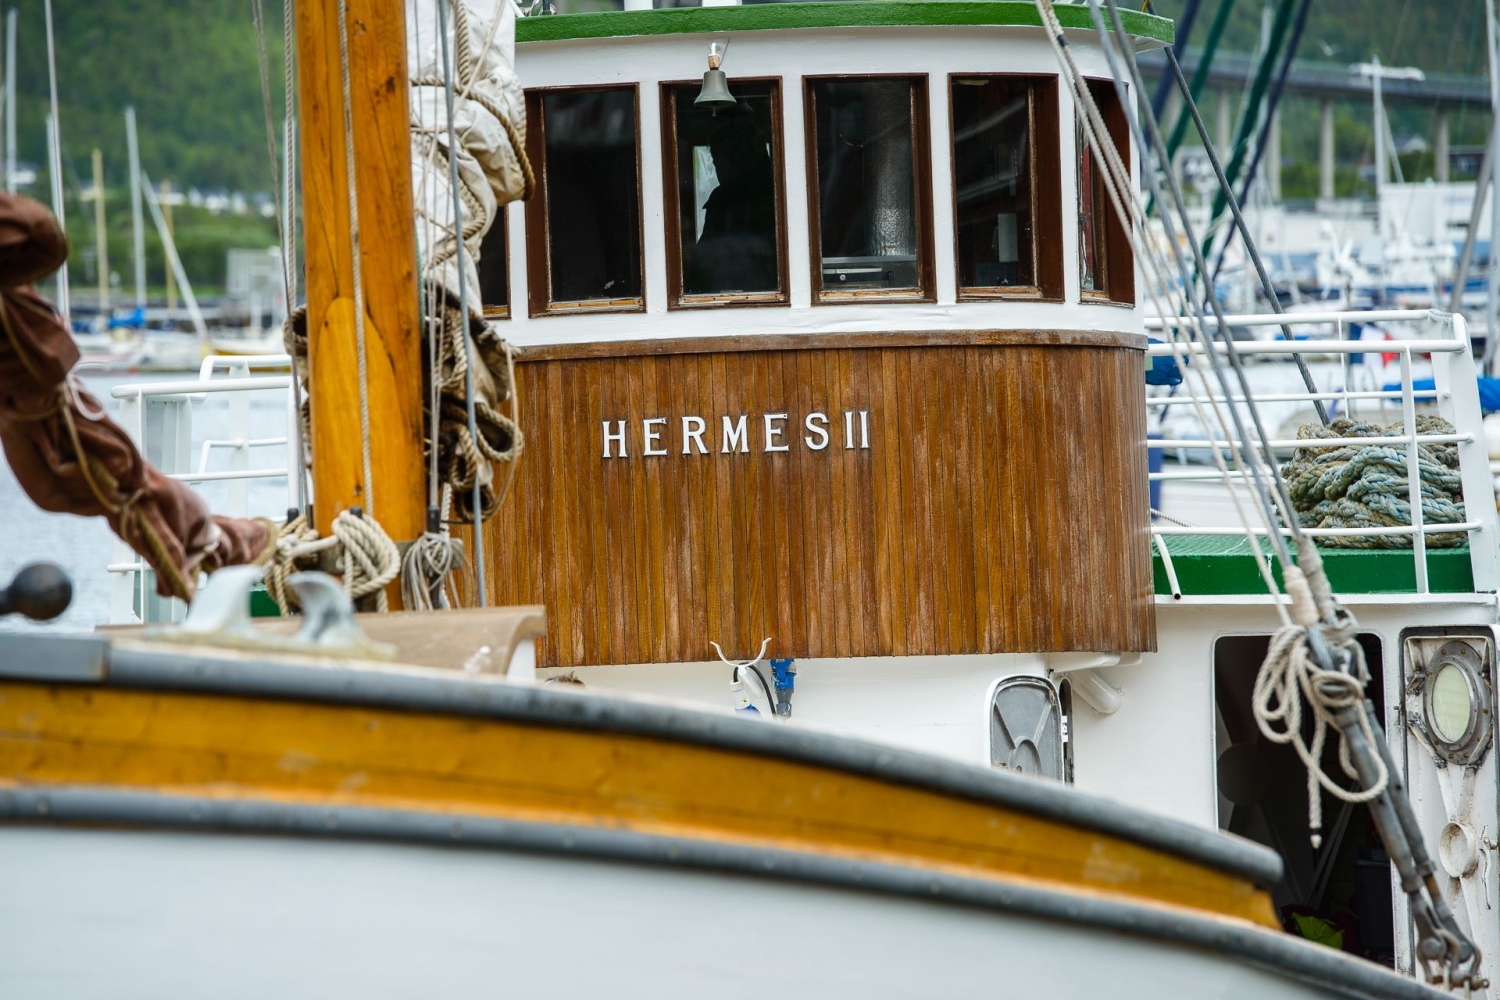 Hermes II på kaia